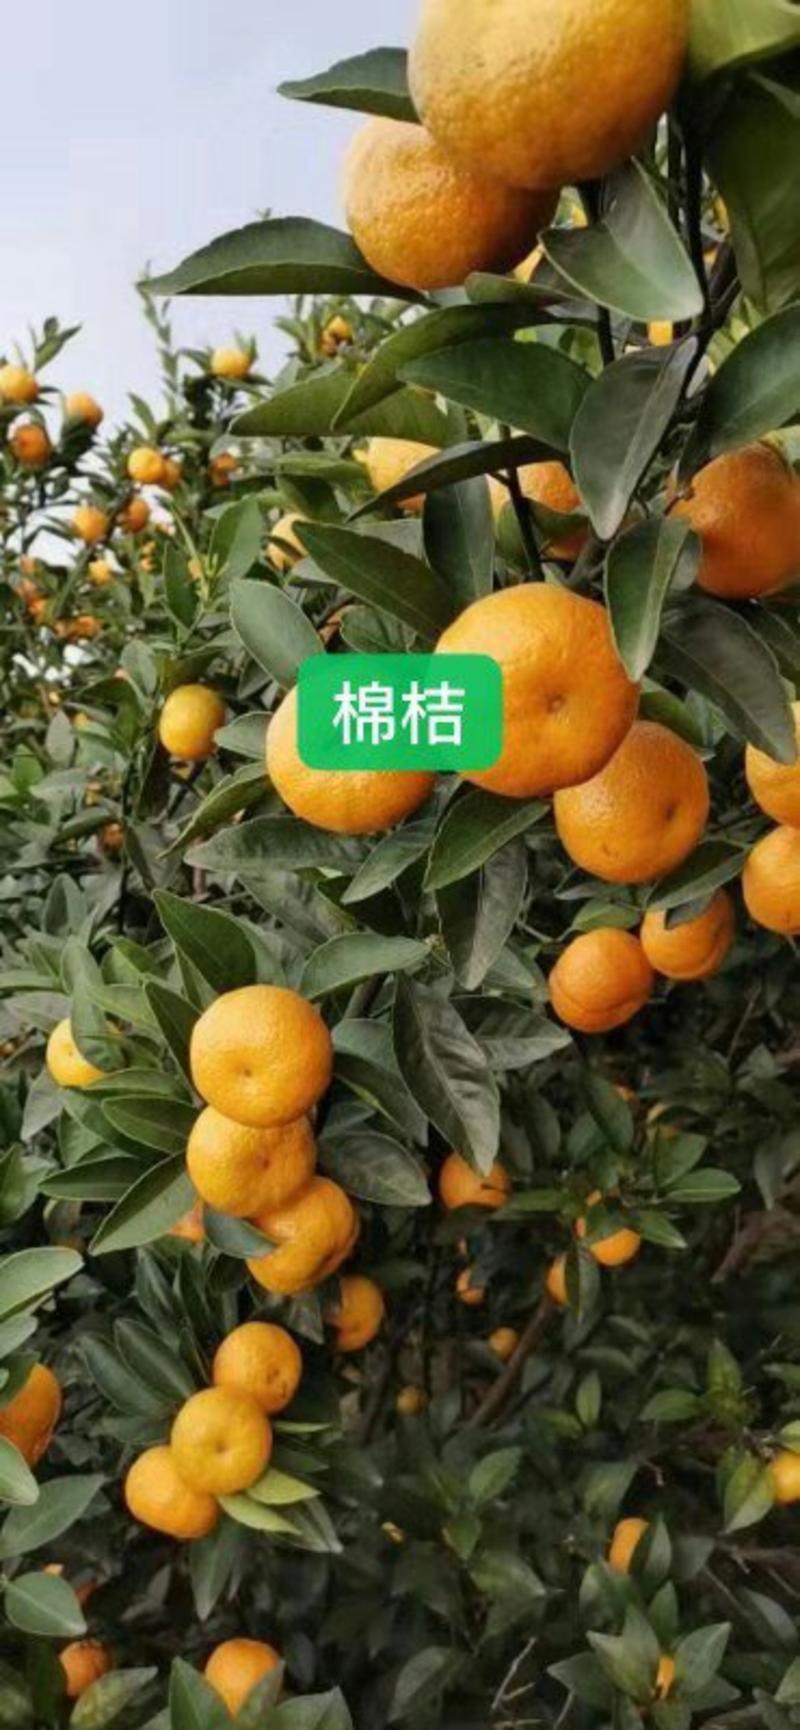 广西桂林全州各种橘子开始大量上市